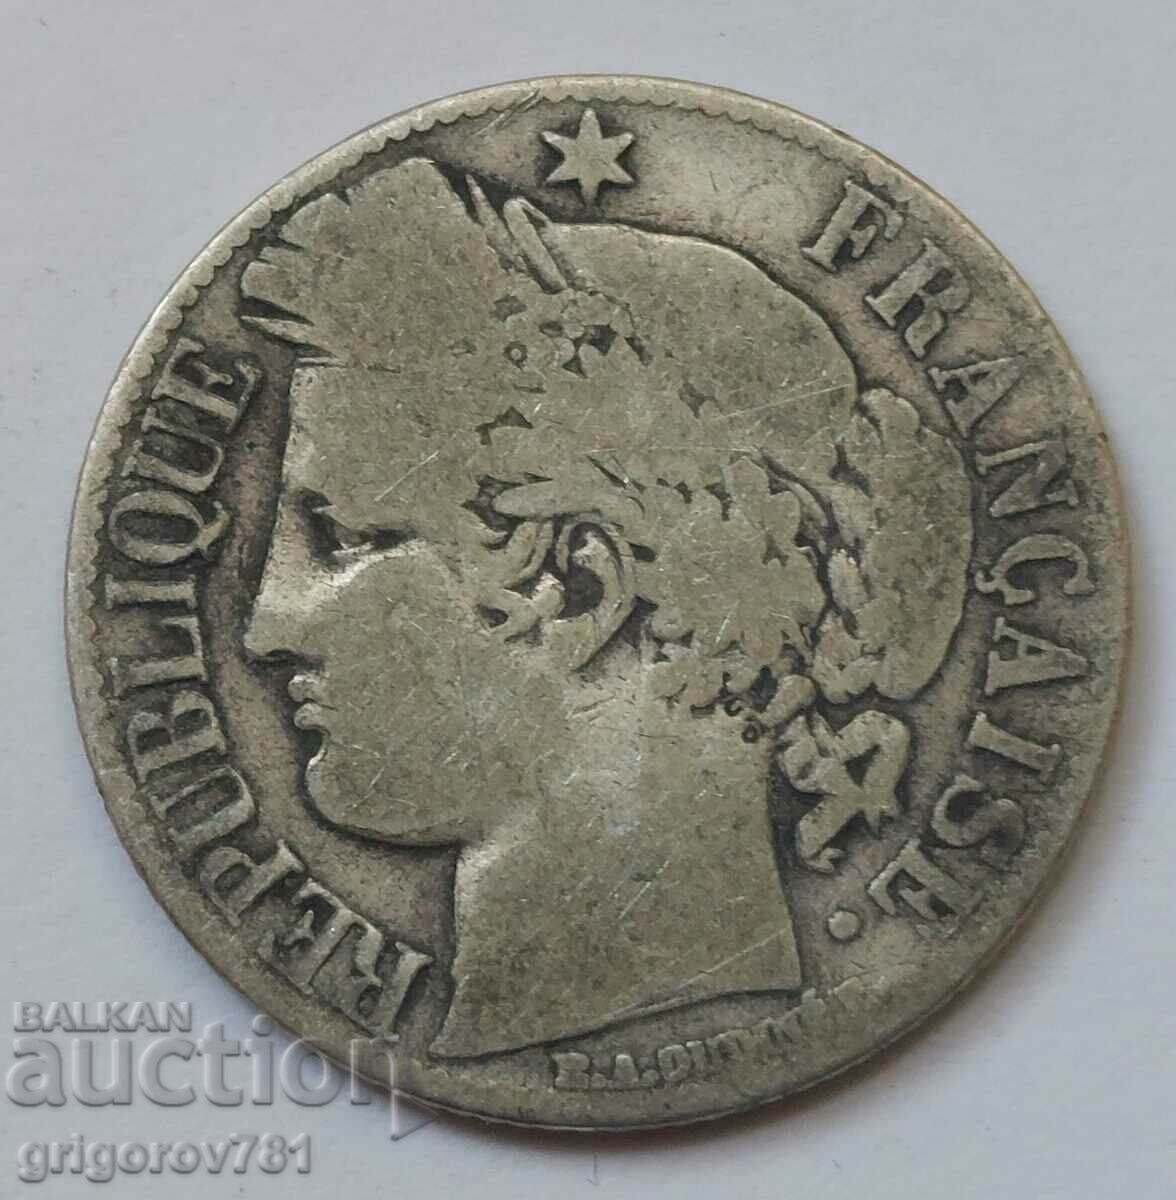 Ασήμι 1 φράγκου Γαλλία 1872 A - Ασημένιο νόμισμα #51